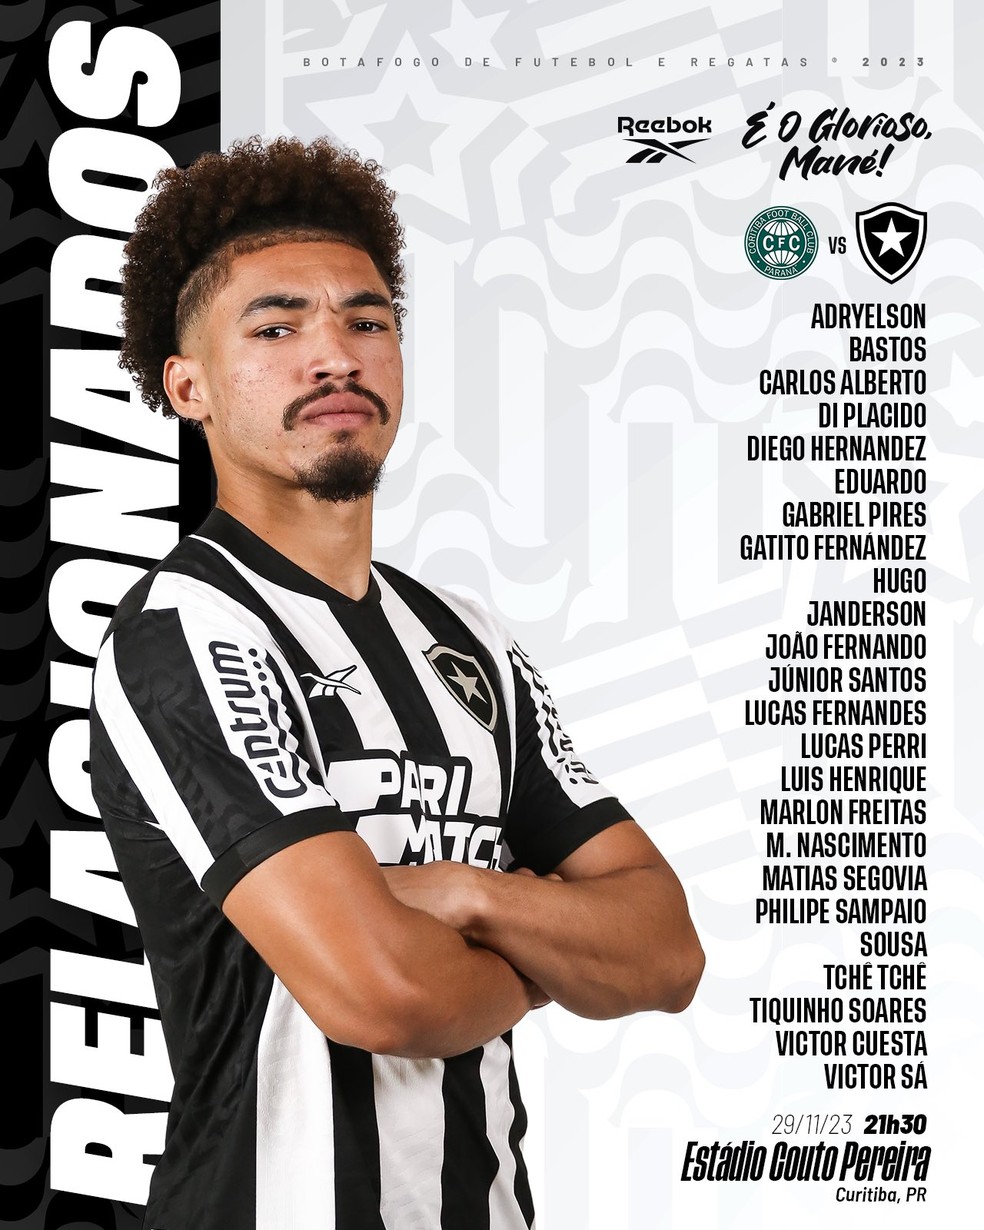 Gloriosas: Botafogo contrata goleira revelação do Internacional, botafogo